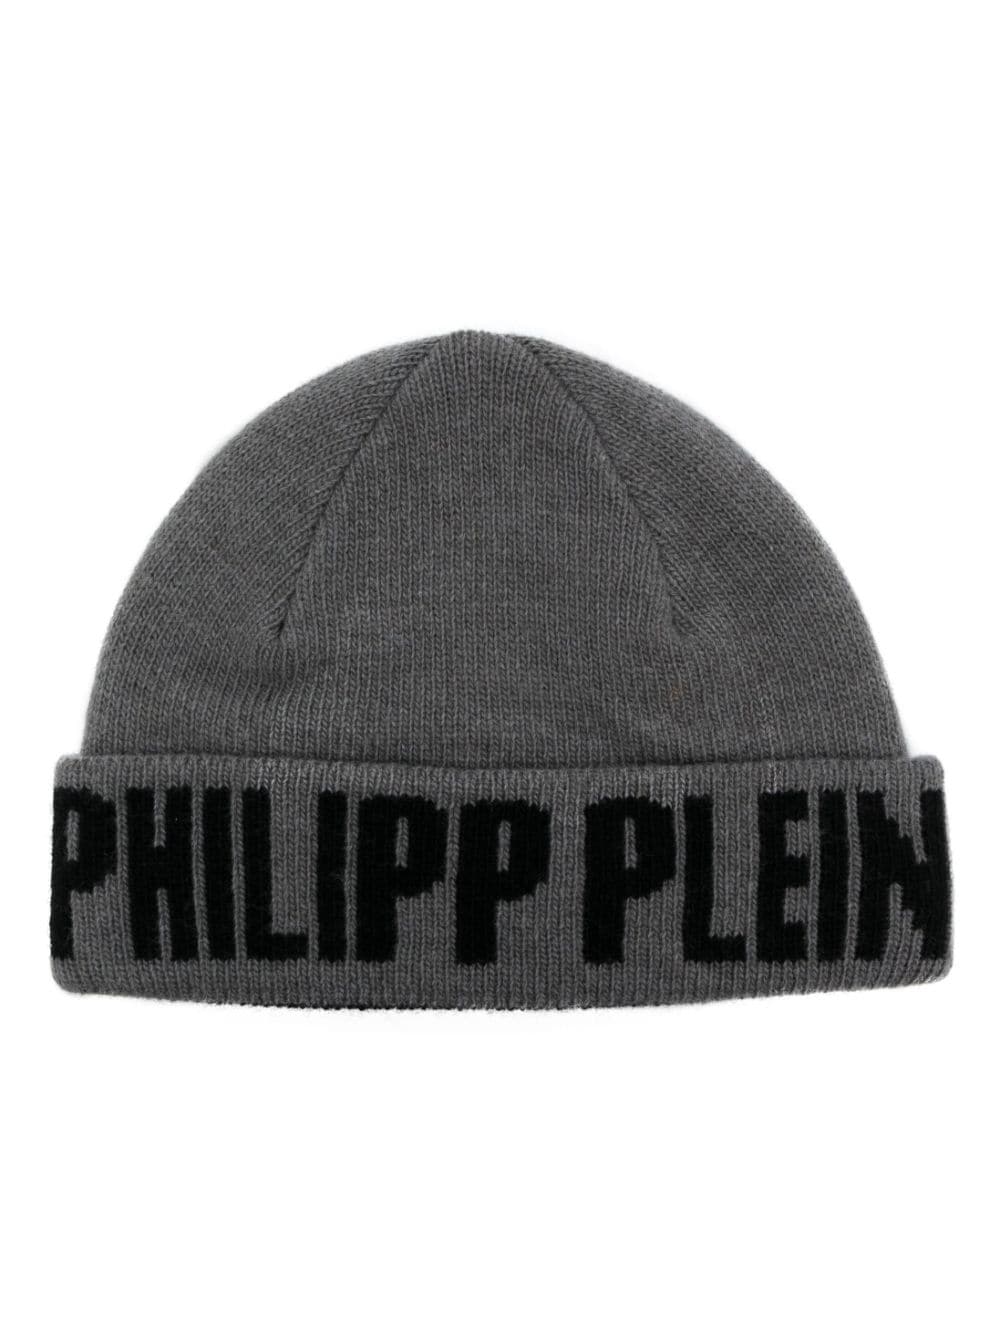 Philipp Plein Philipp Plein jacquard beanie - Grey von Philipp Plein